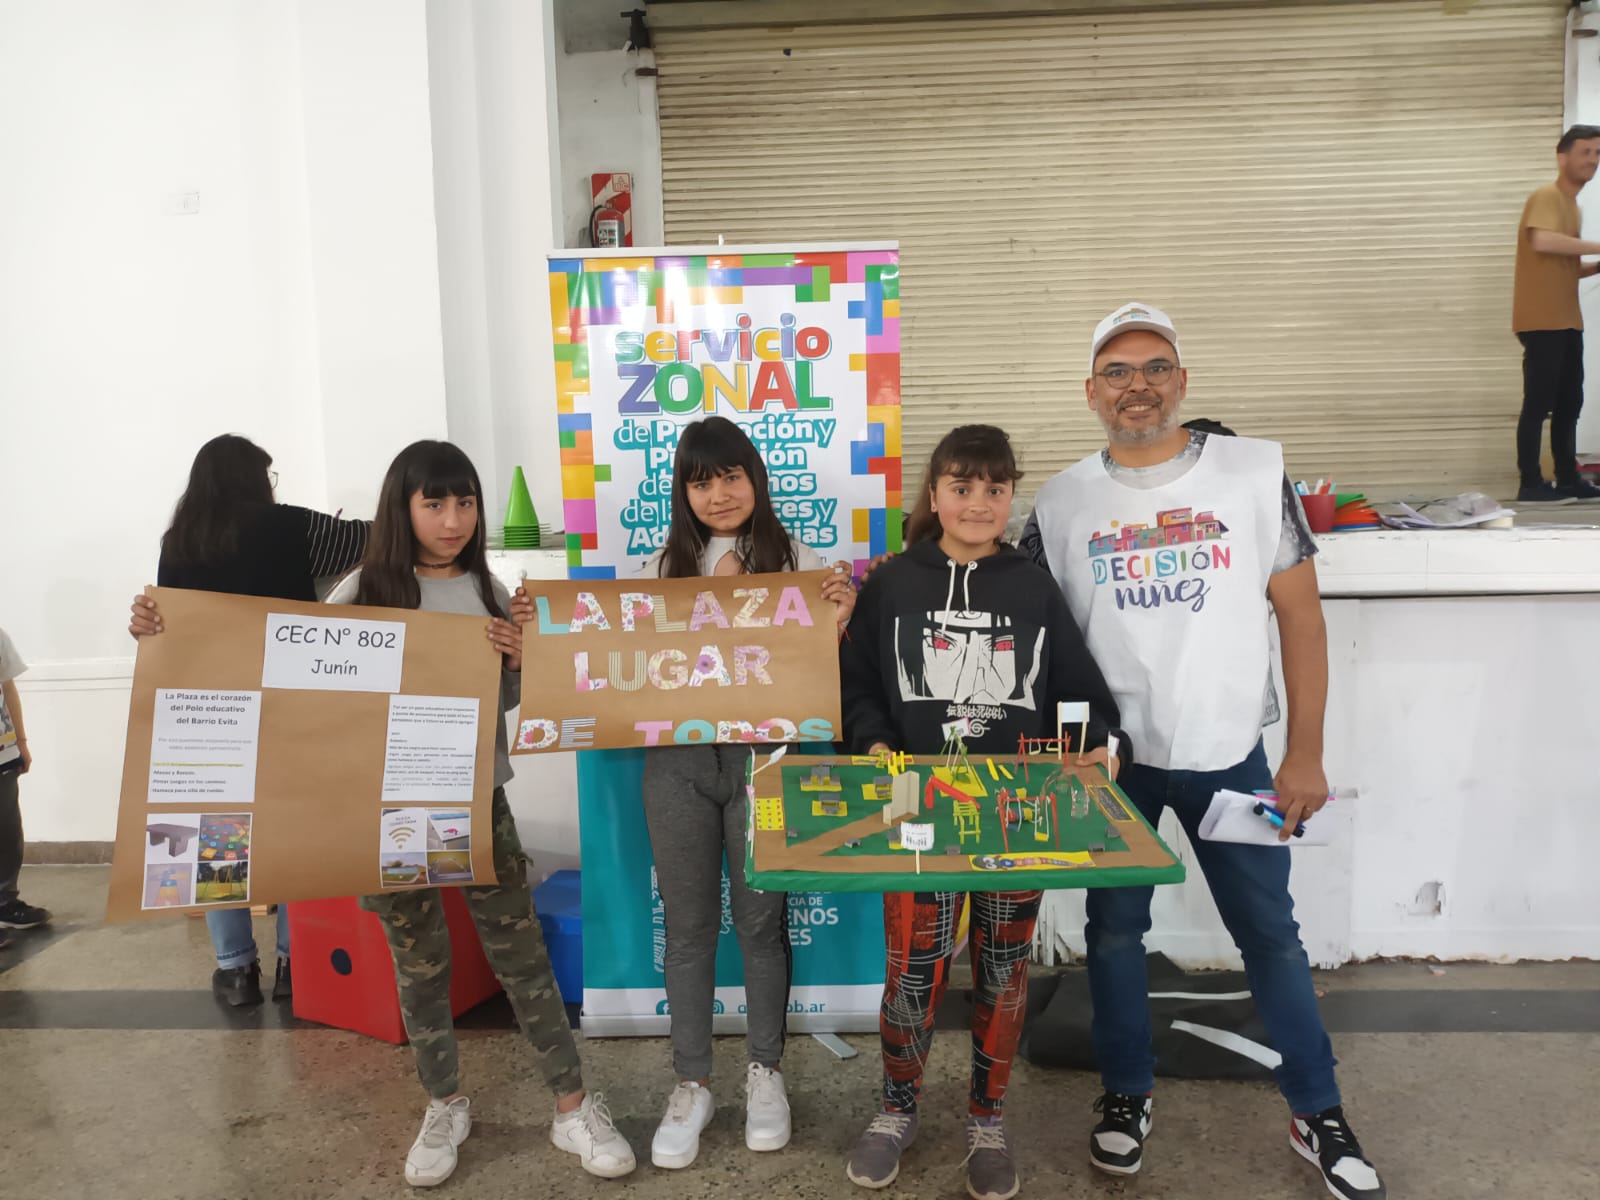 Dieron a conocer los proyectos ganadores de la Asamblea de Decisión Niñez que se celebró en Junín